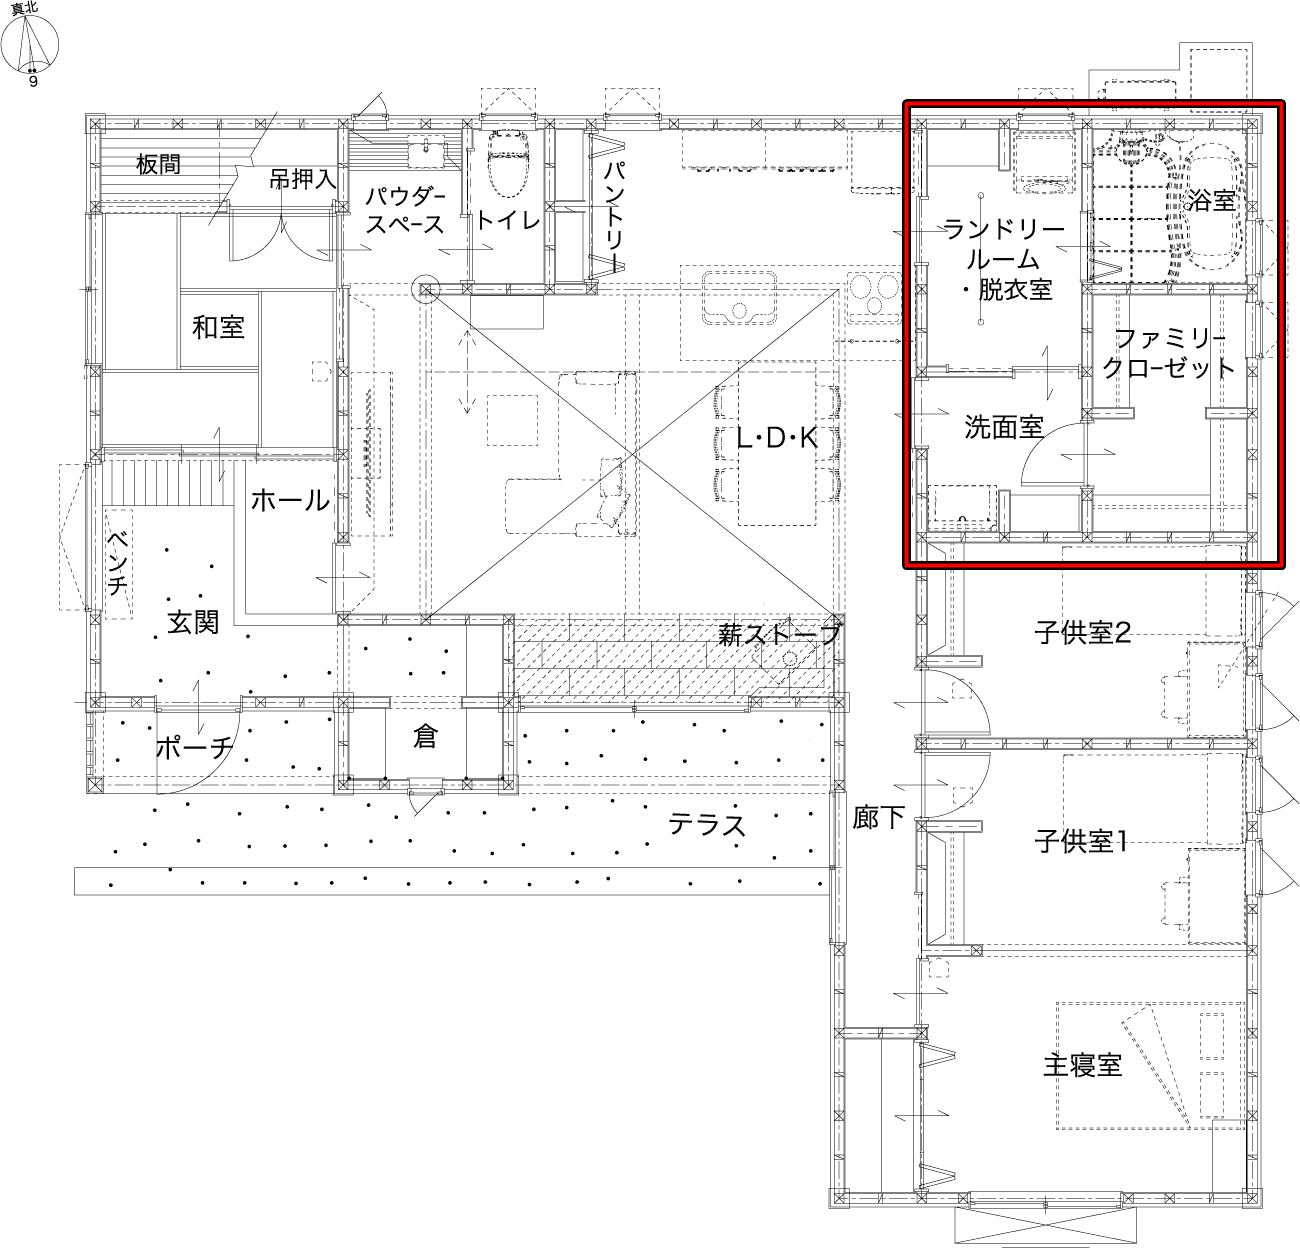 丸和建設さんの平屋「川内天辰モデルハウス」のランドリールームと隣接したファミリークローゼットの間取り図